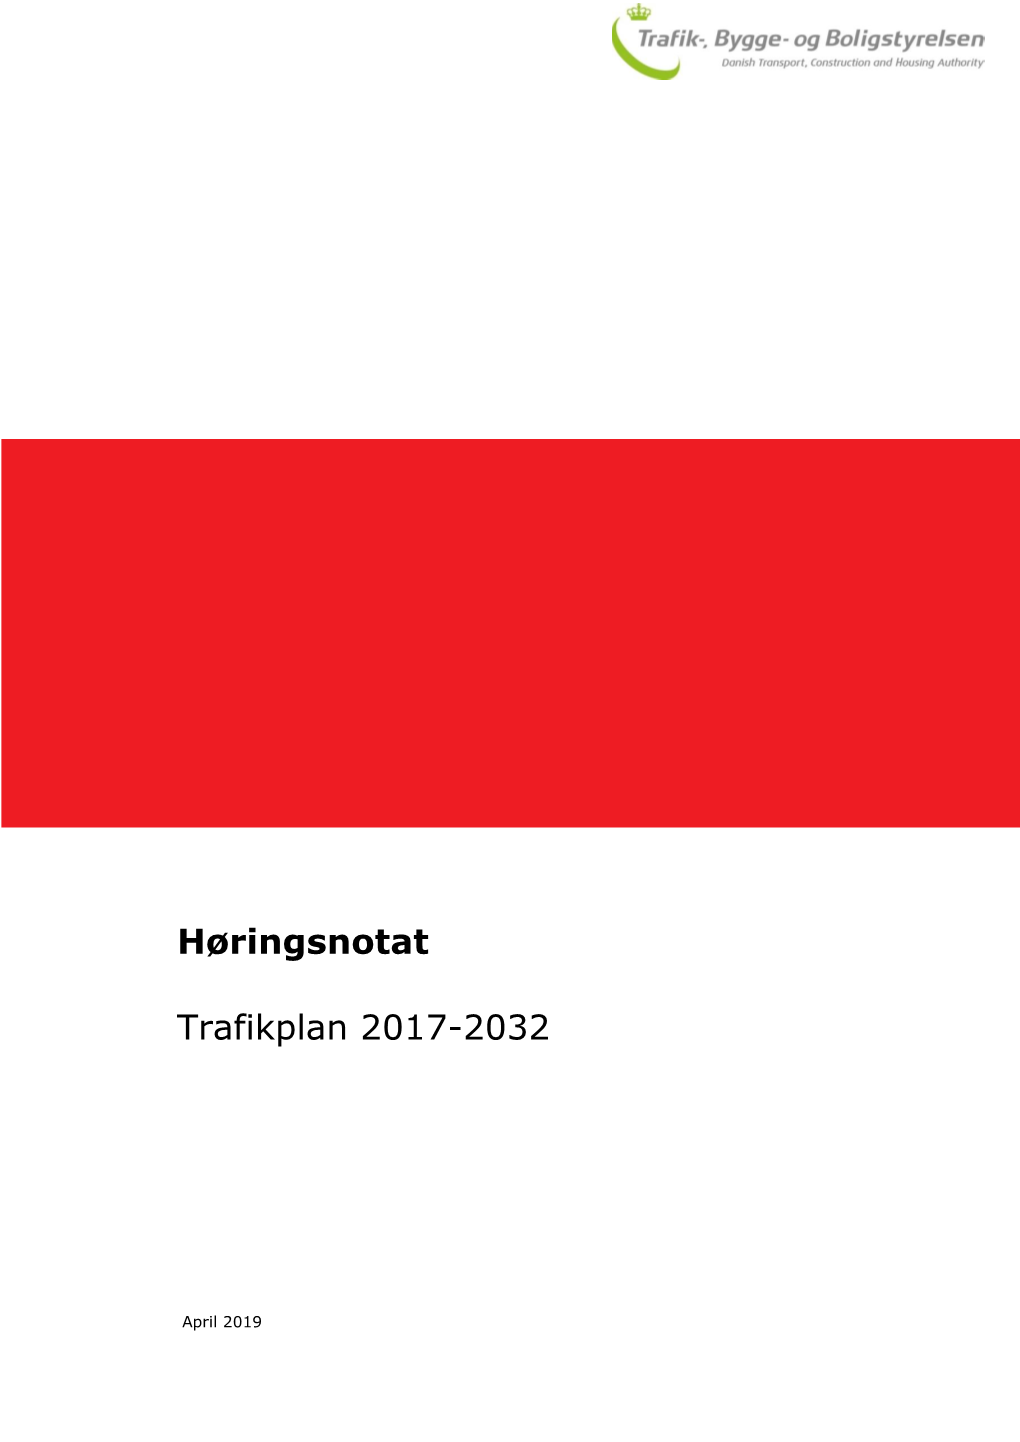 Høringsnotat Trafikplan 2017-2032